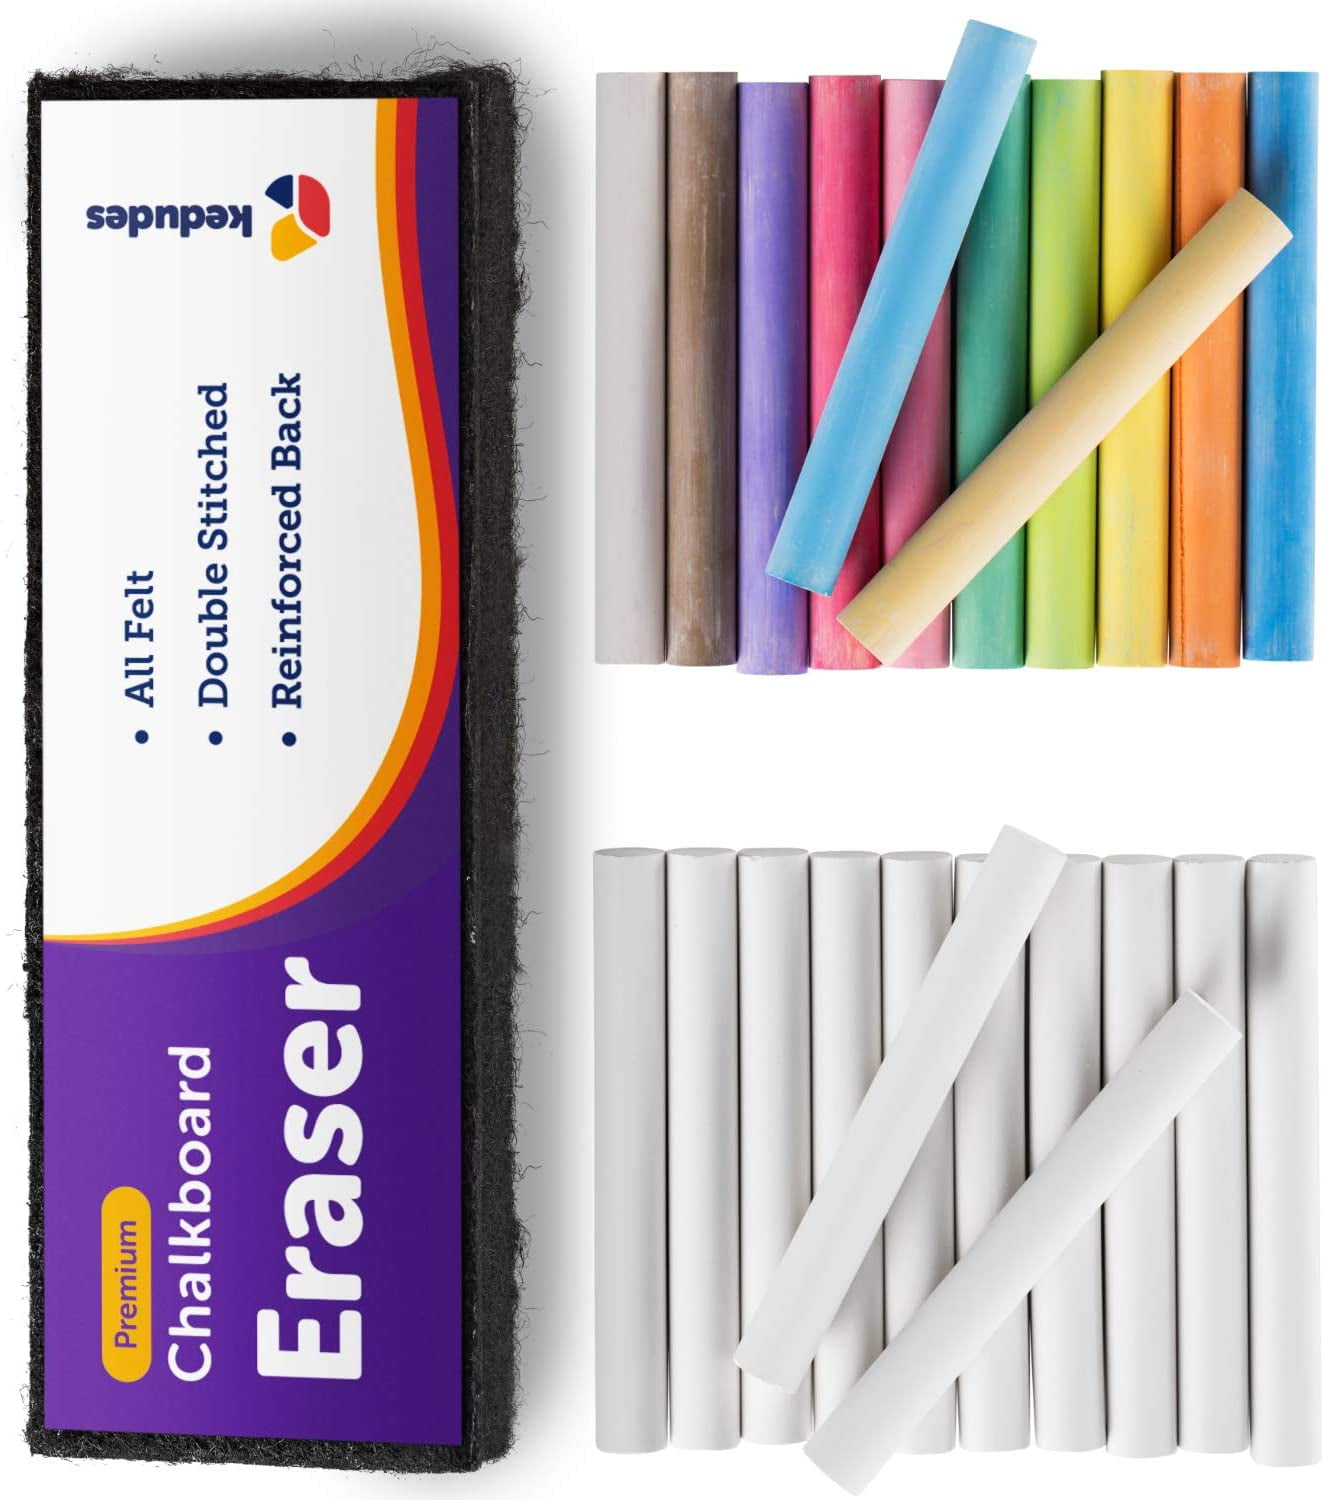 Details about   New 25 Piece CHALK ERASER SET Kids White Coloured Chalk Stick Craft 